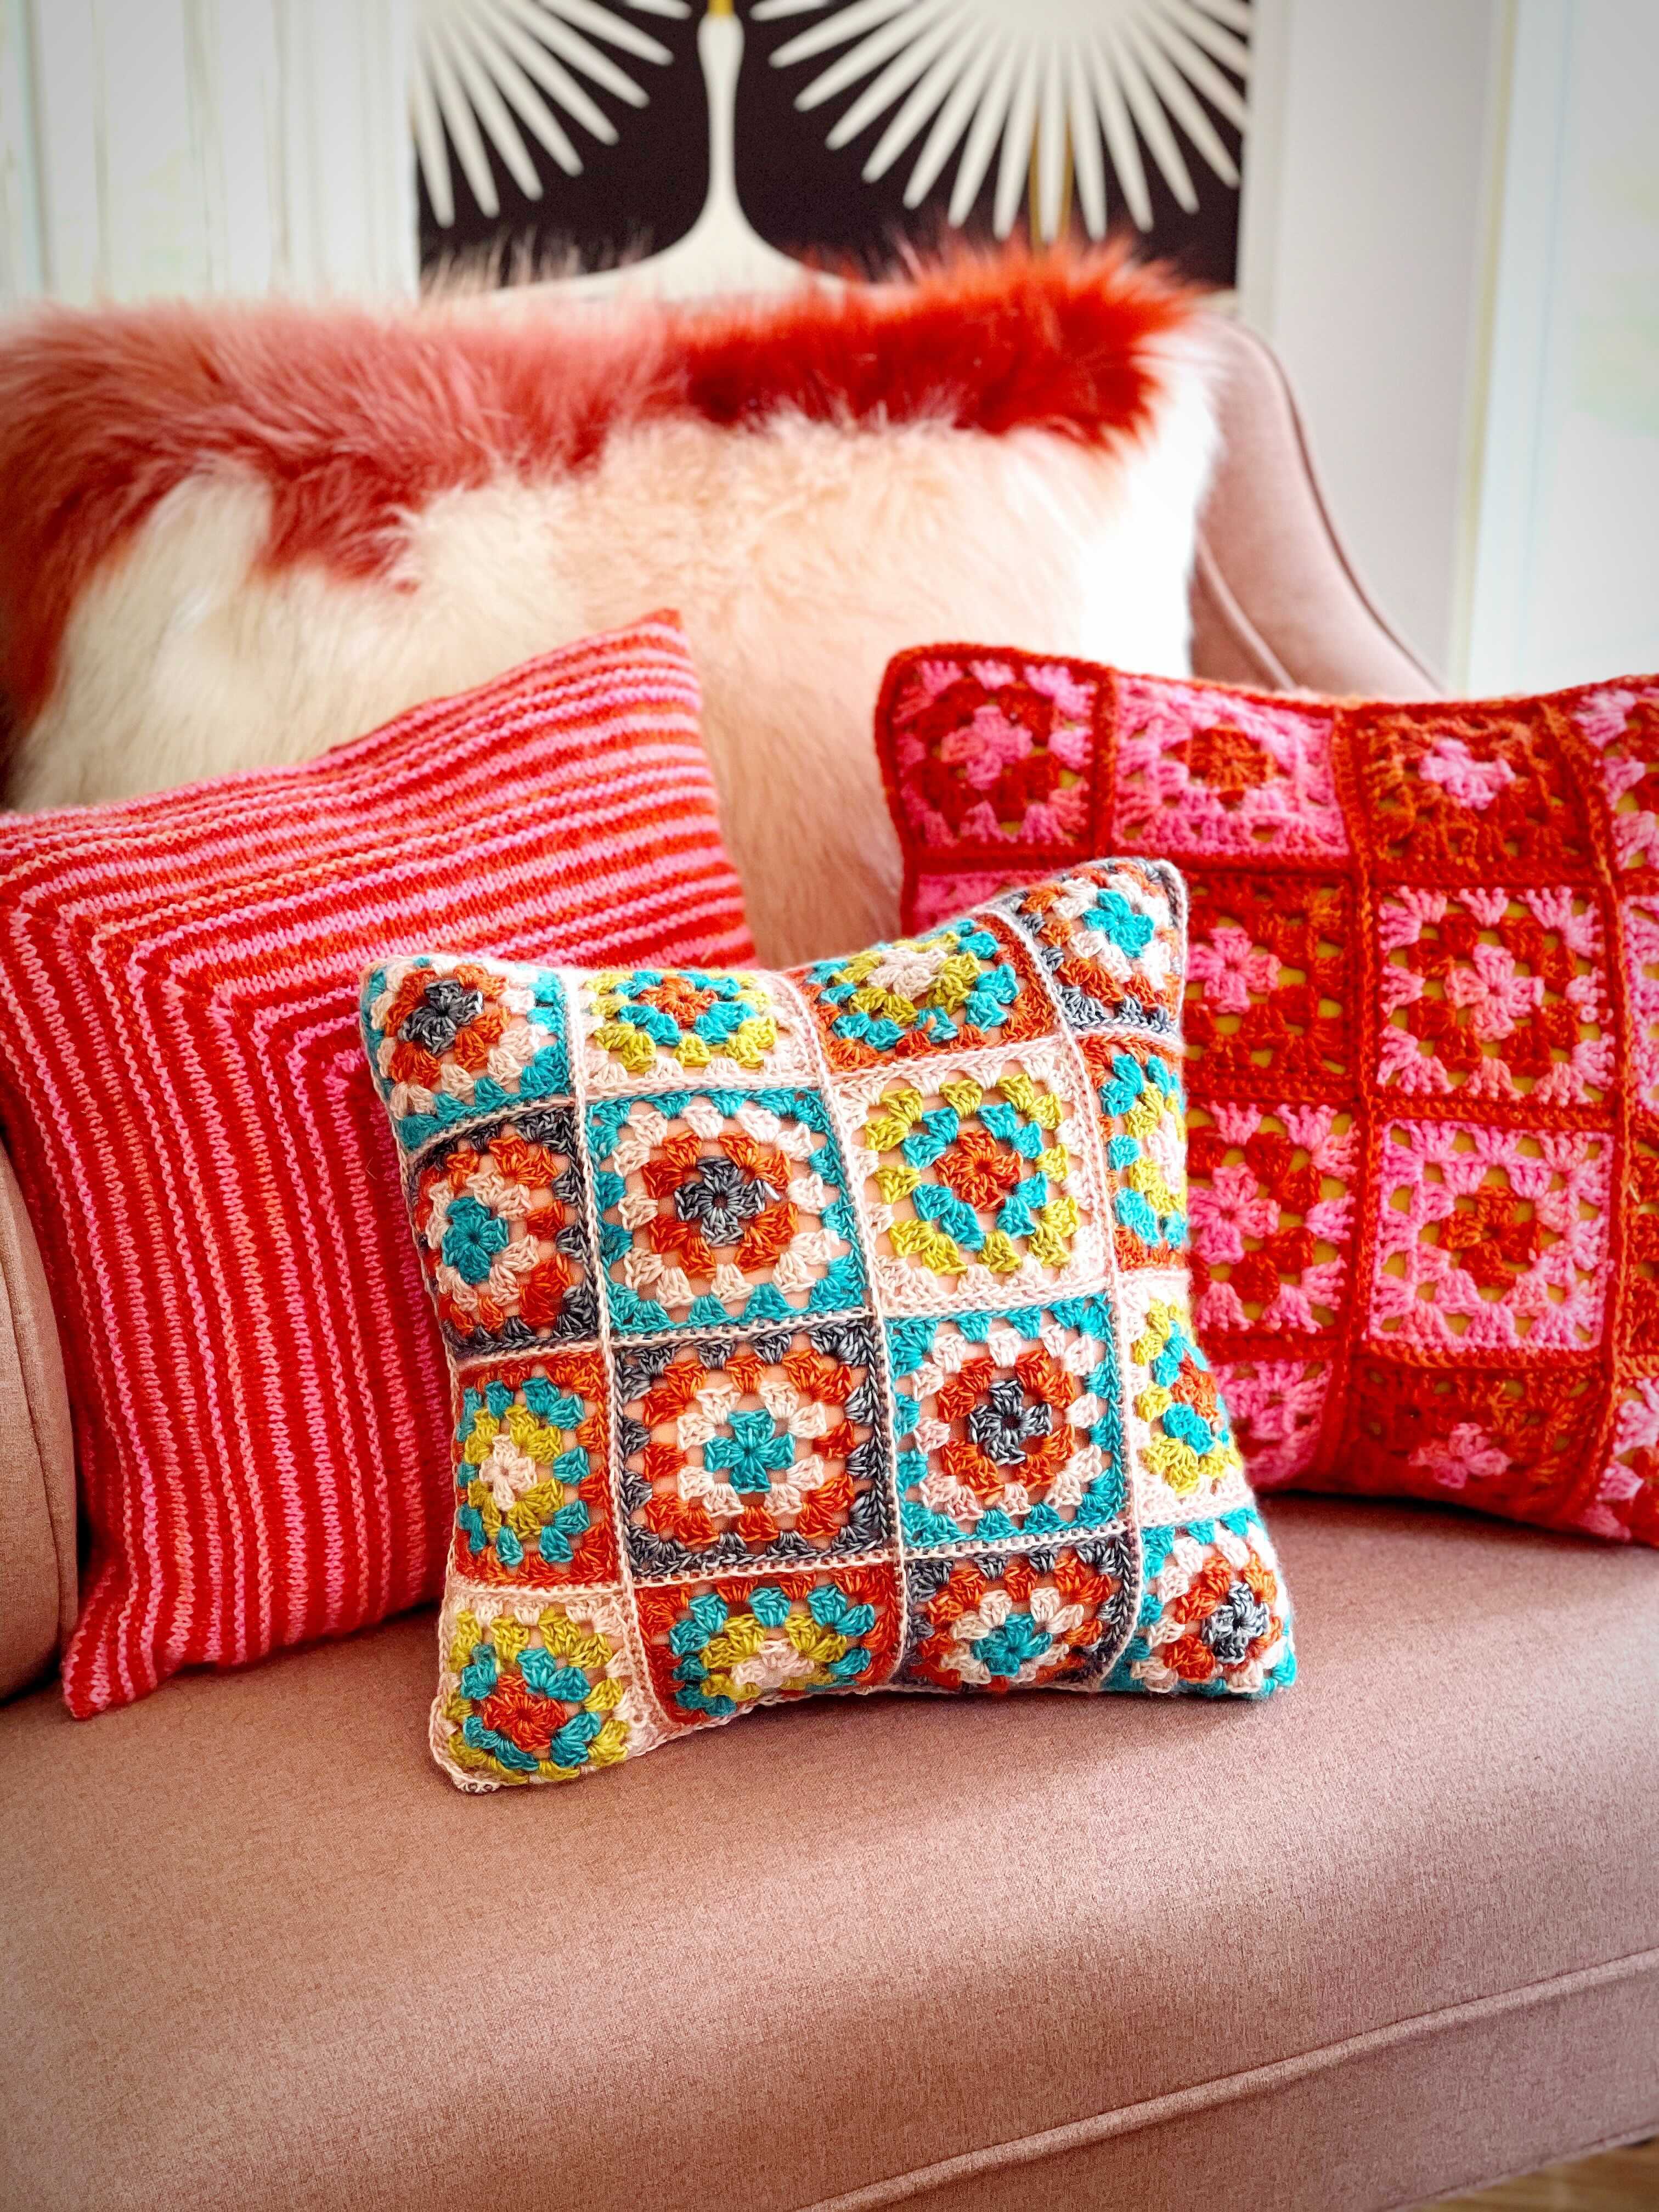 Crochet Cushions & Throws 